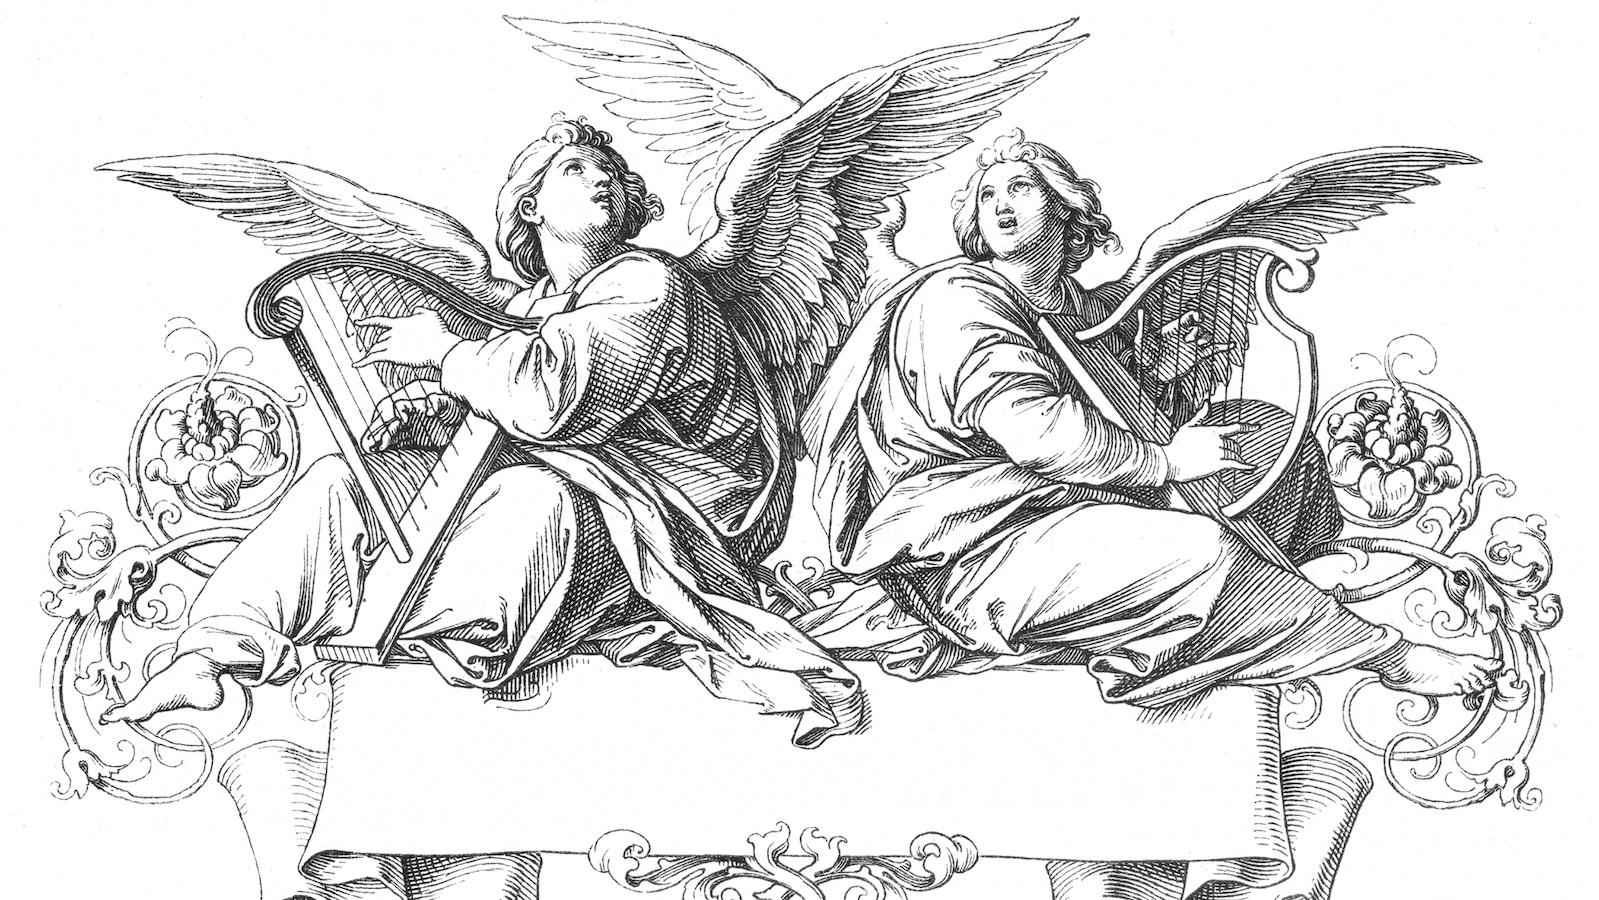 Archangel Gabriel  Judaism, Islamic Beliefs & Christian Theology